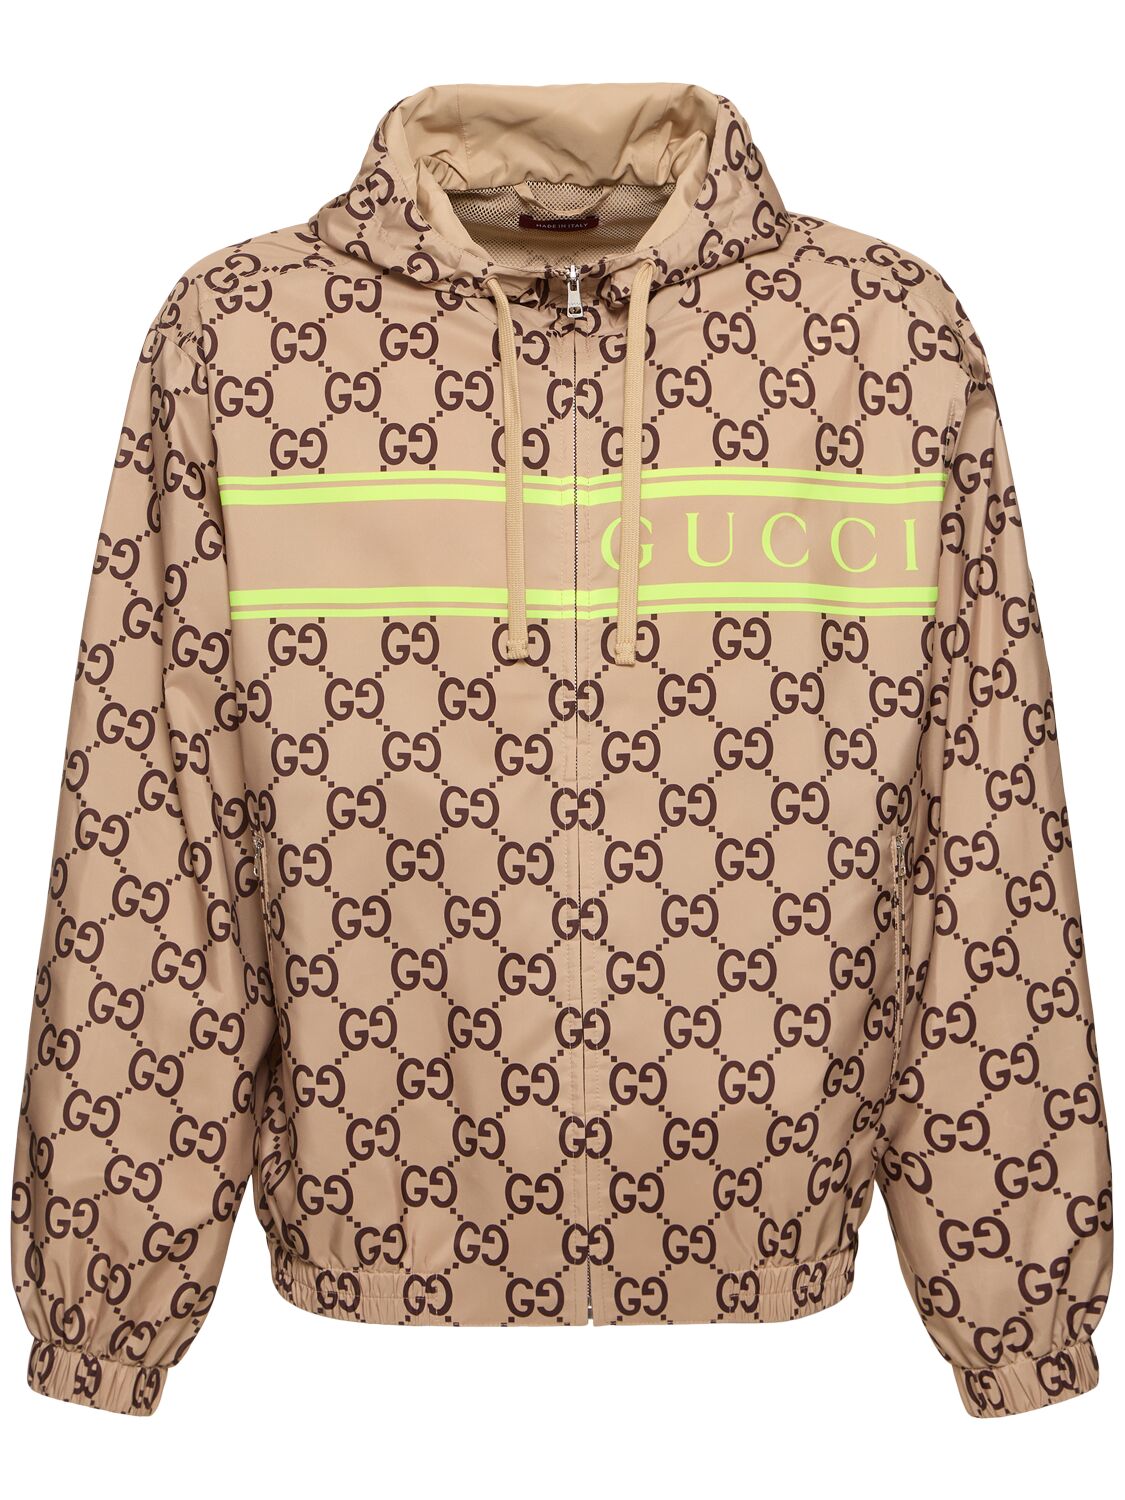 Gucci Canvas Tech Jacket In Beige/ebony